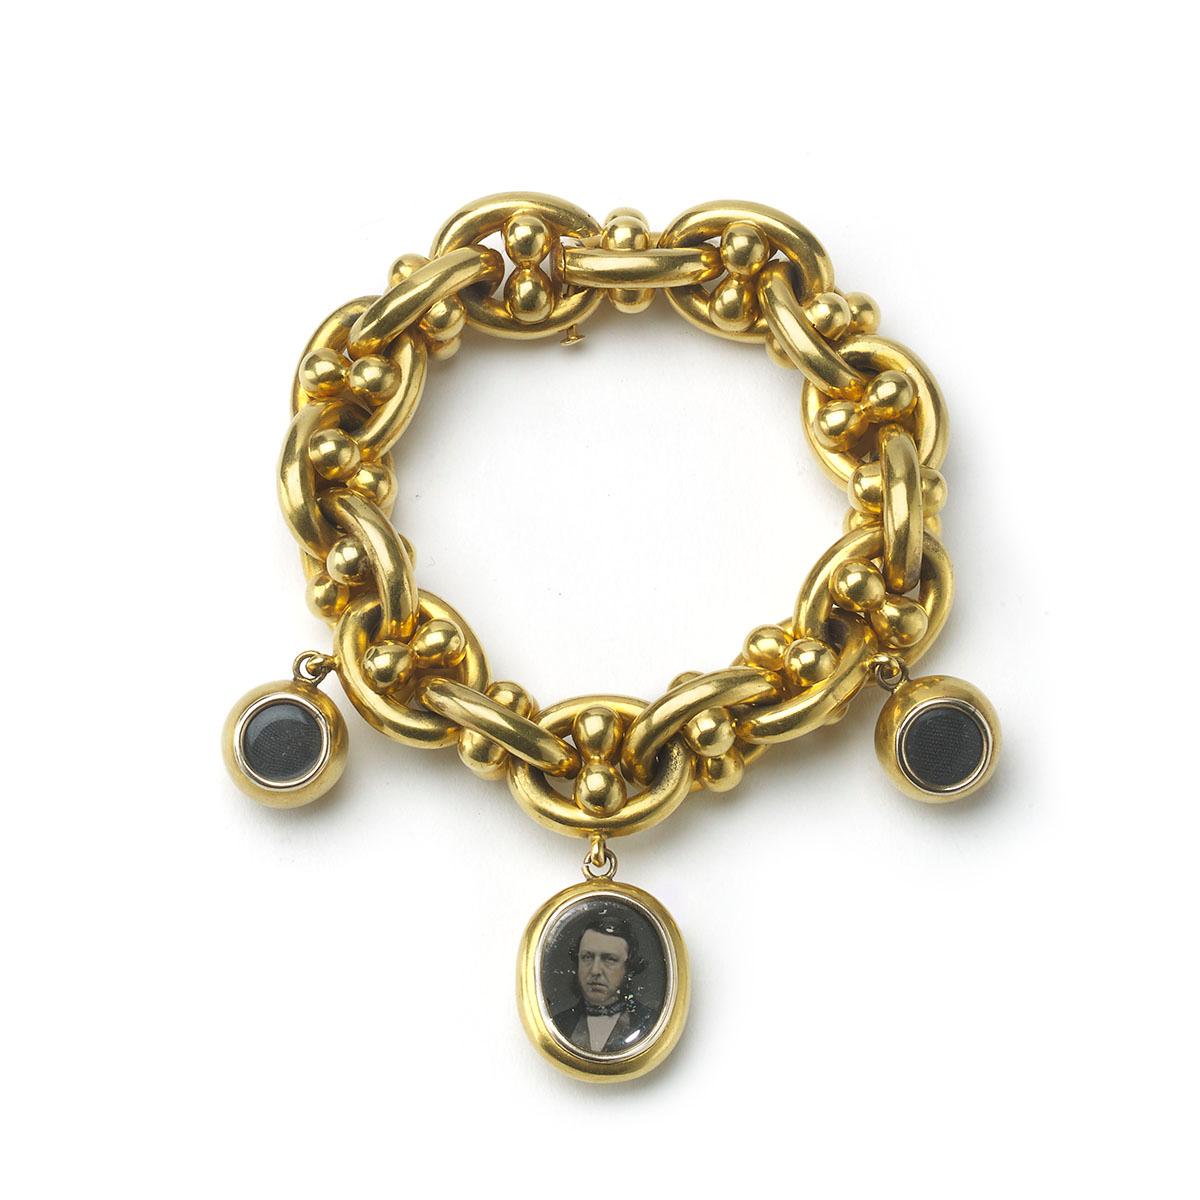 Eine viktorianische, Phantasie ovalen Link nautischen Gold Armband, mit einem ovalen Medaillon Charme, mit einem getönten Kollodium-Positiv oder Ambrotypie Glas Foto eines Herren in viktorianischer Kleidung, die Rückseite mit einem geprägten Anker